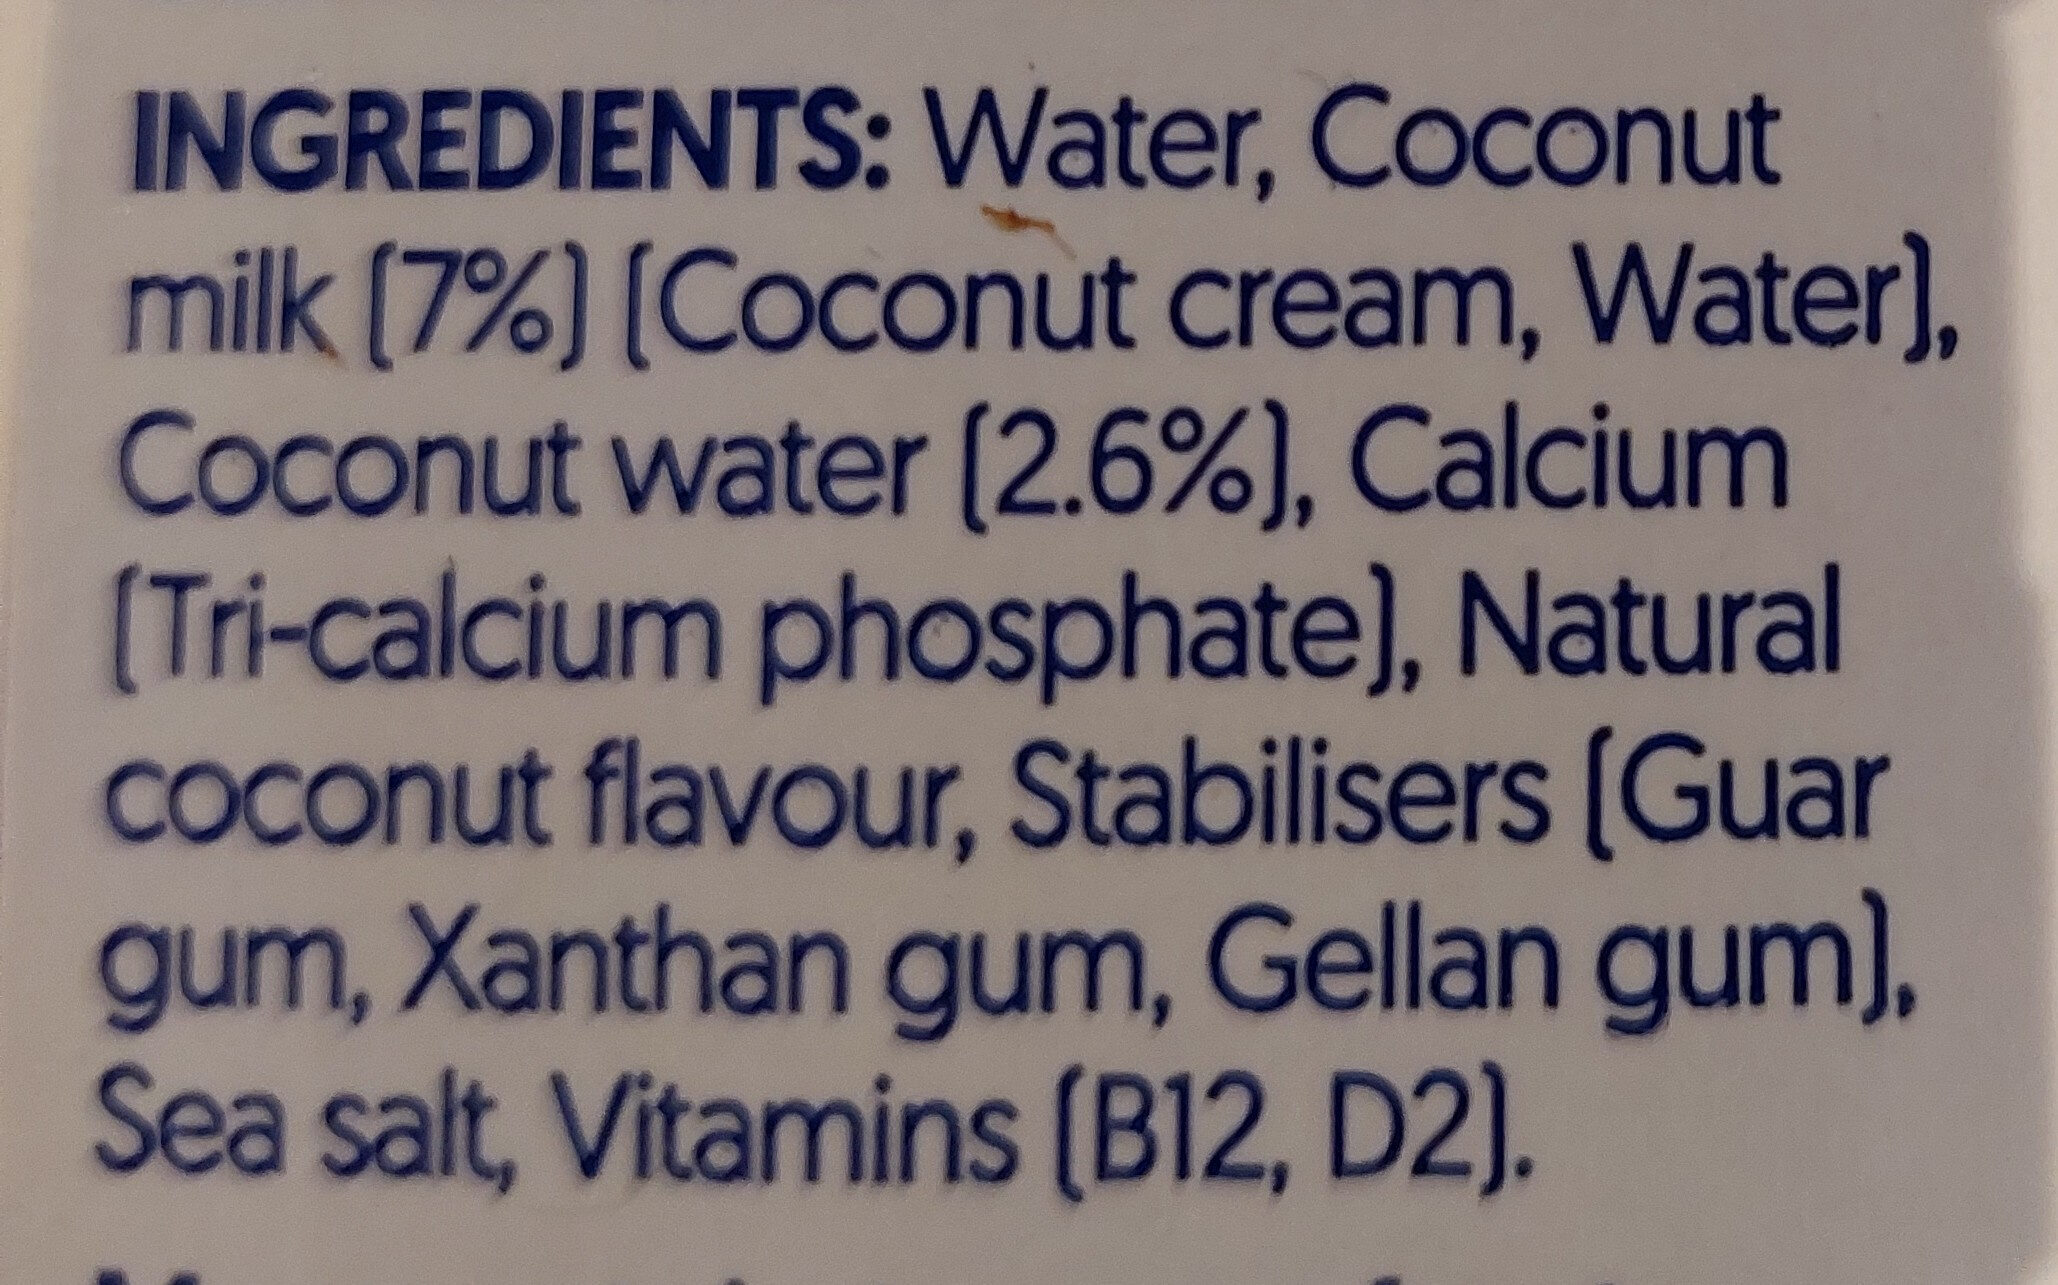 Coconut No Sugars - Ingredients